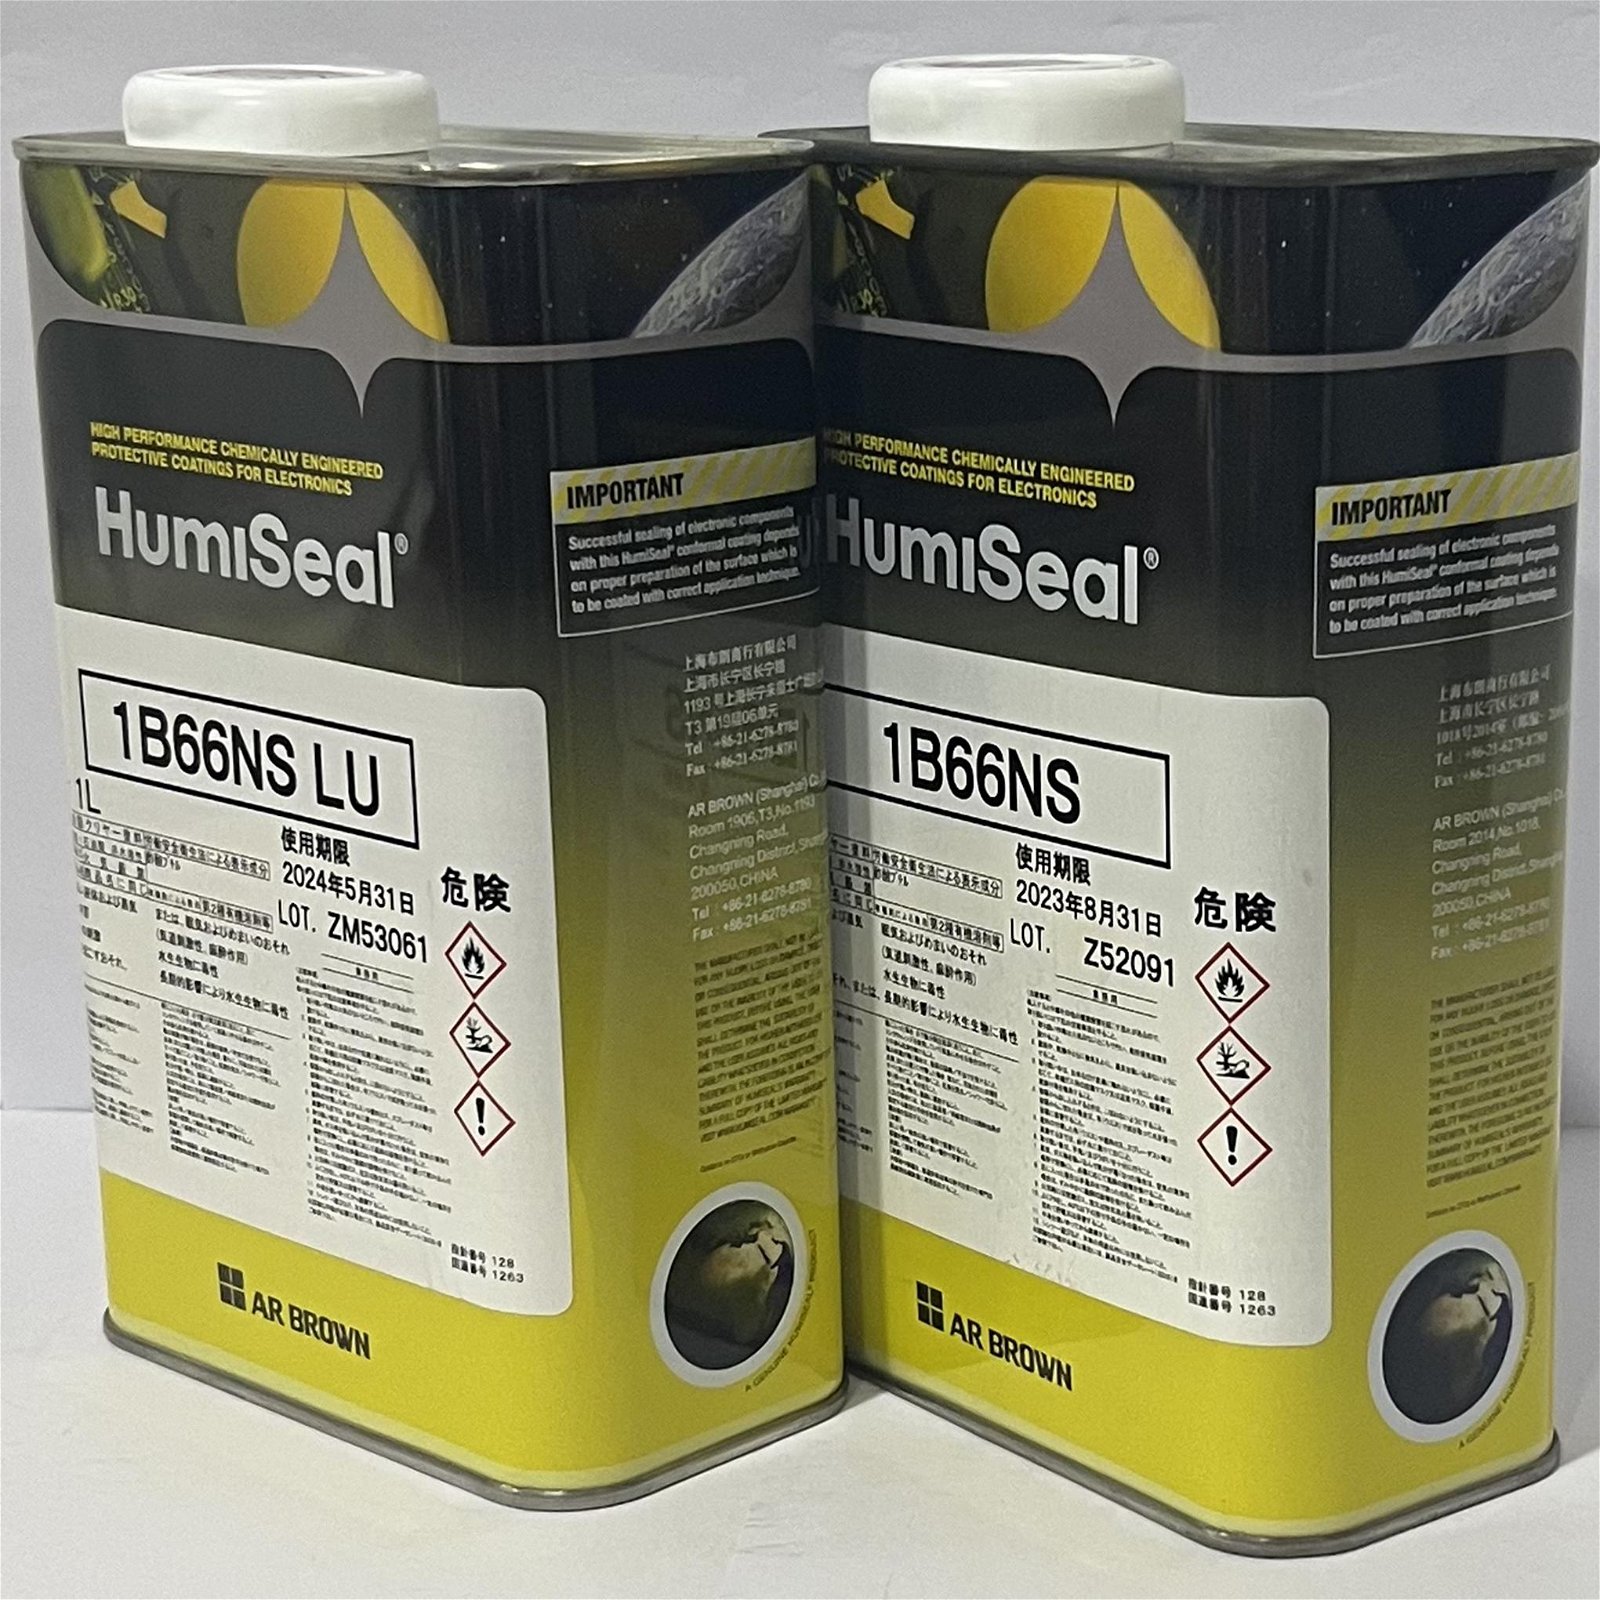 HumiSeal 1B66NS 三防漆，防湿剂，防潮漆、披覆胶、三防涂料 4